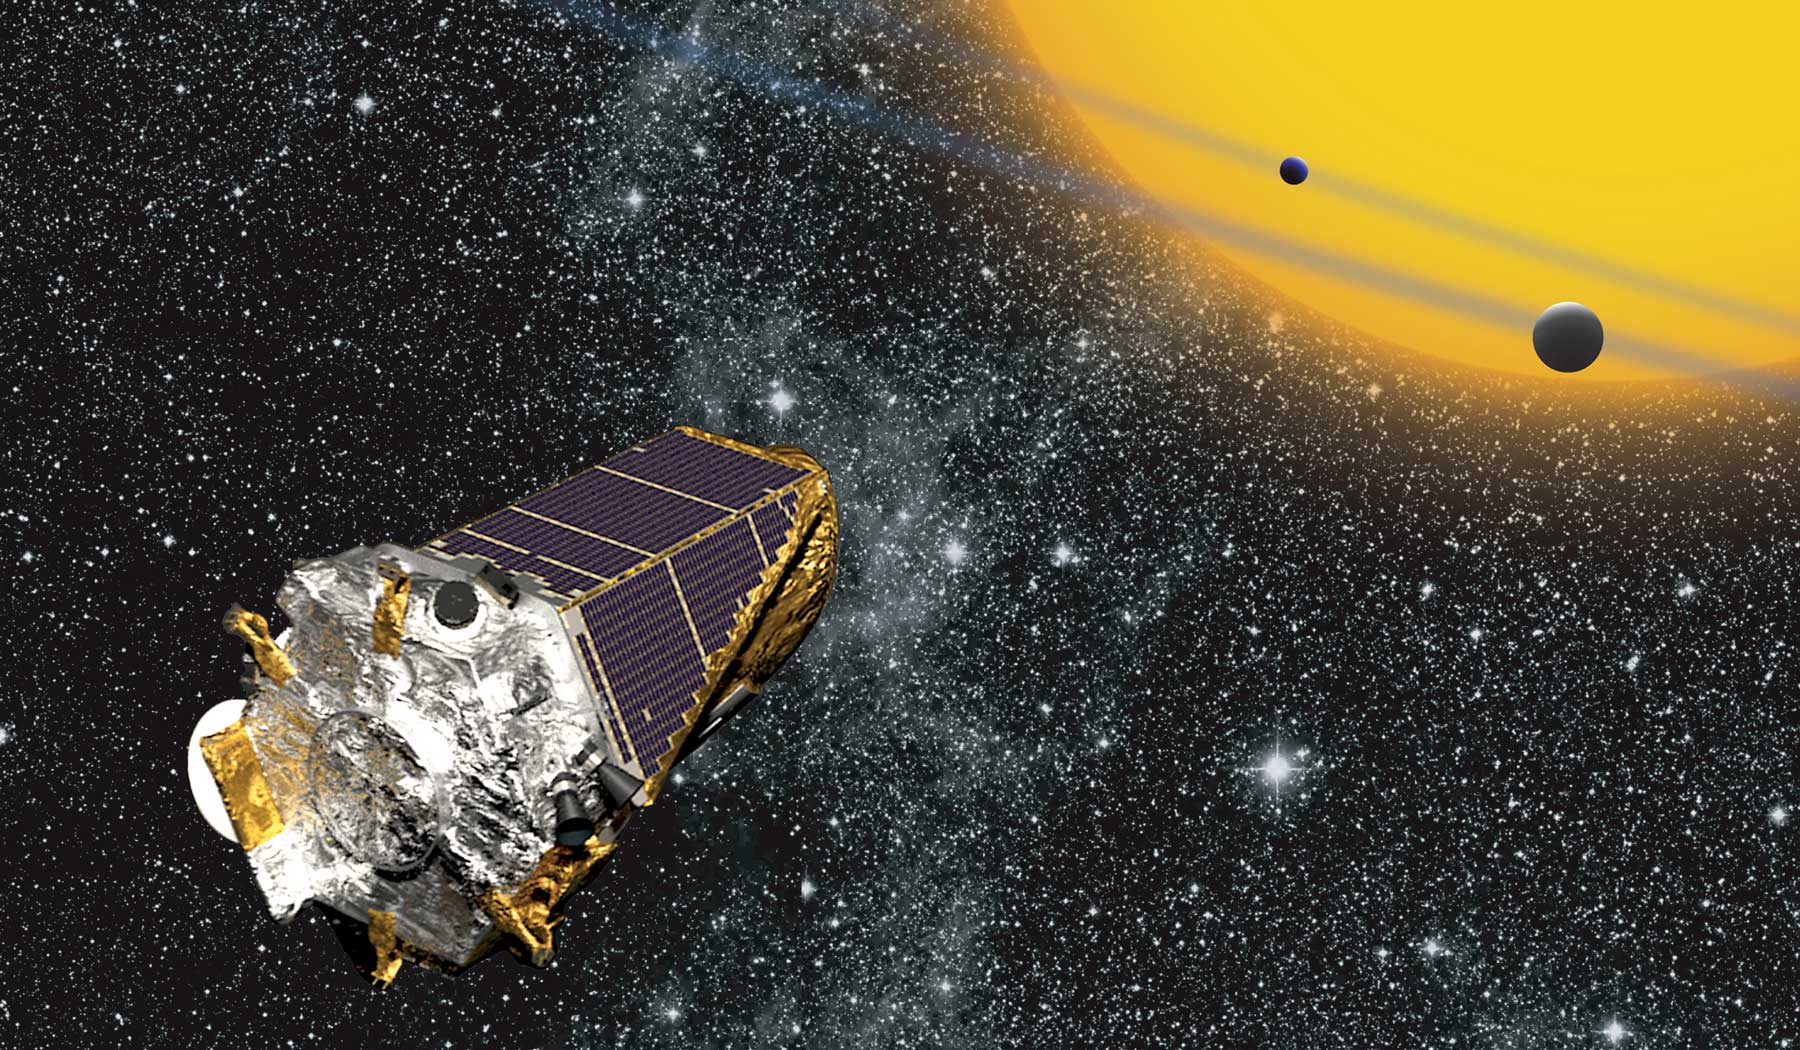 Artist's impression of the NASA's Kepler-452b telescope.